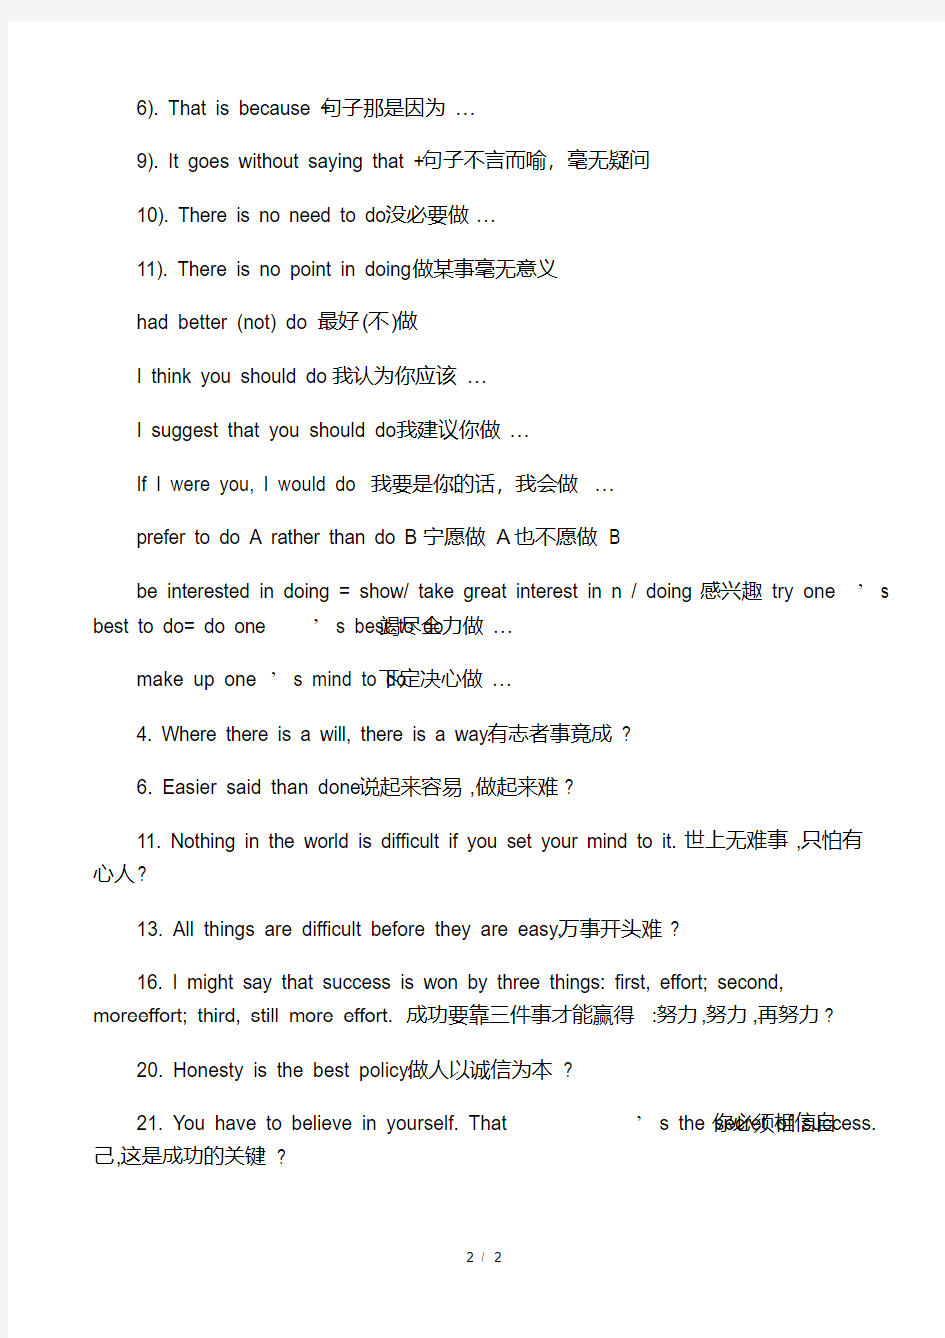 (完整)初中英语作文万能句子.pdf